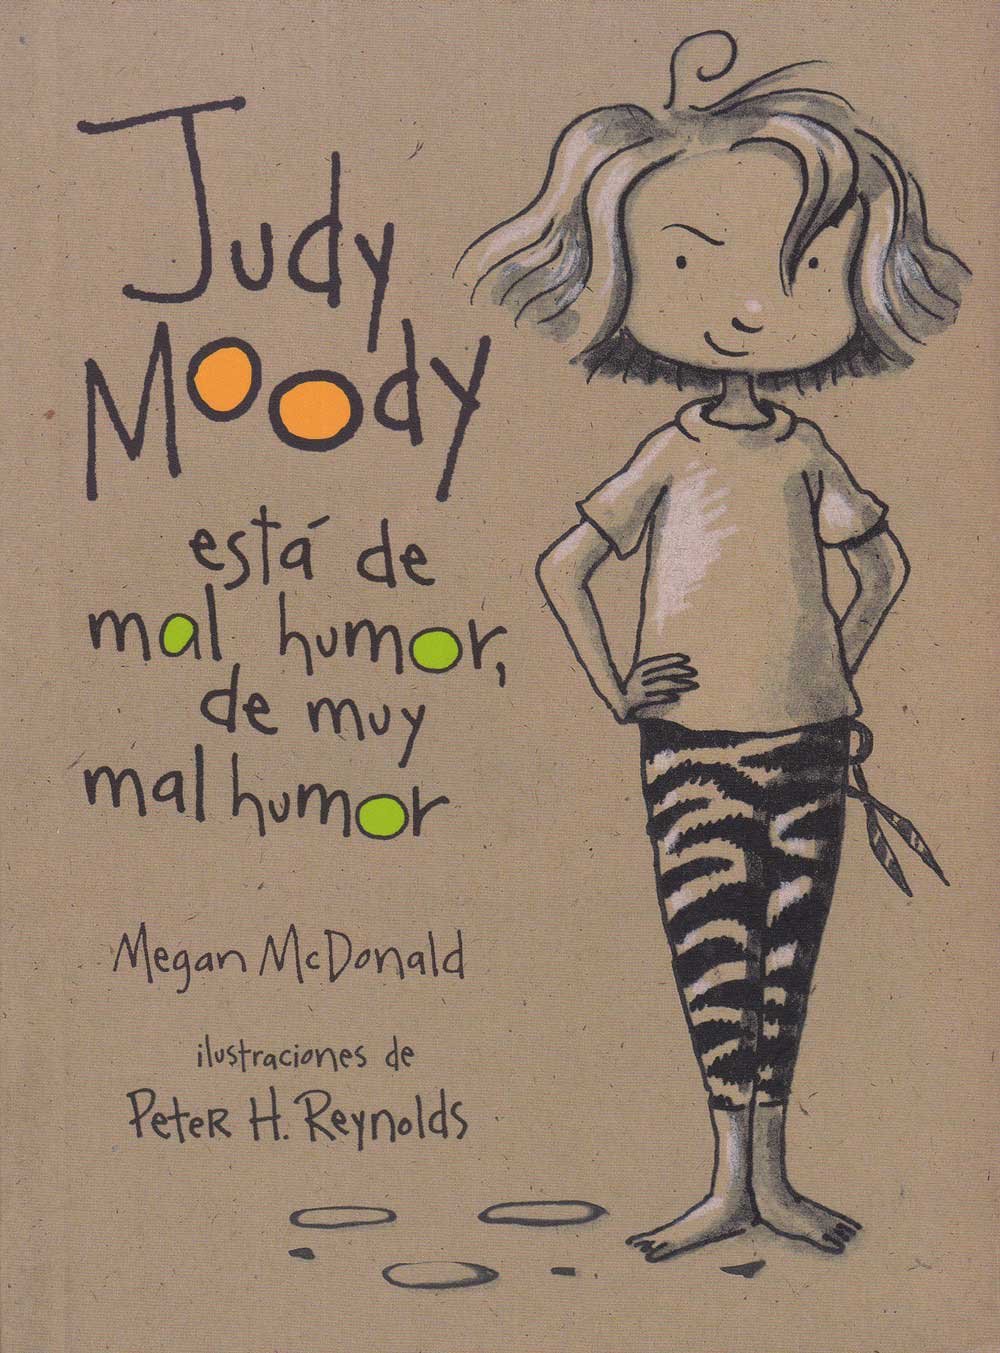 Judy Moody Collection, Rey Del Sol, Del Sol Books, Del Sol University